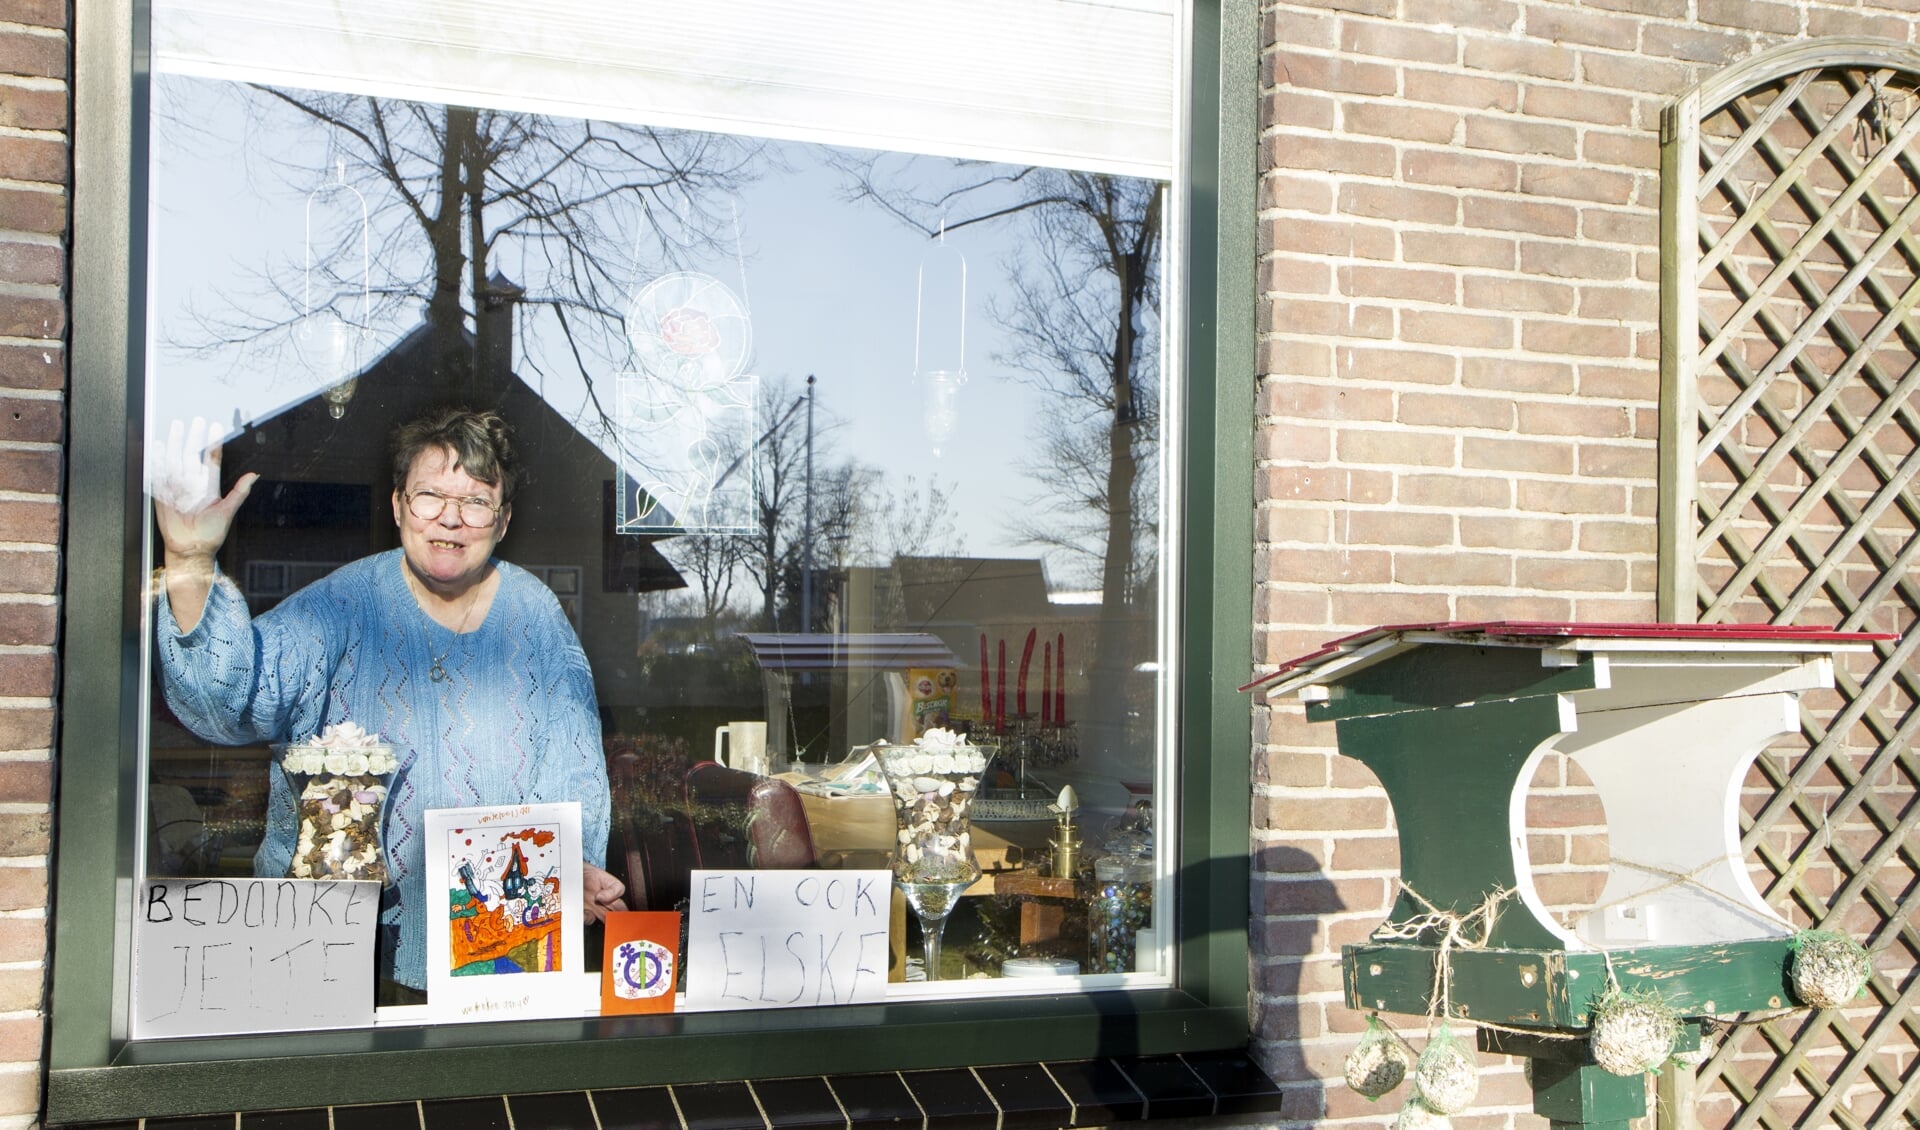 Aaf Haastrecht uit Buitenpost is zeer geraakt door de kaartjes die zij ontving van buurtkinderen. 